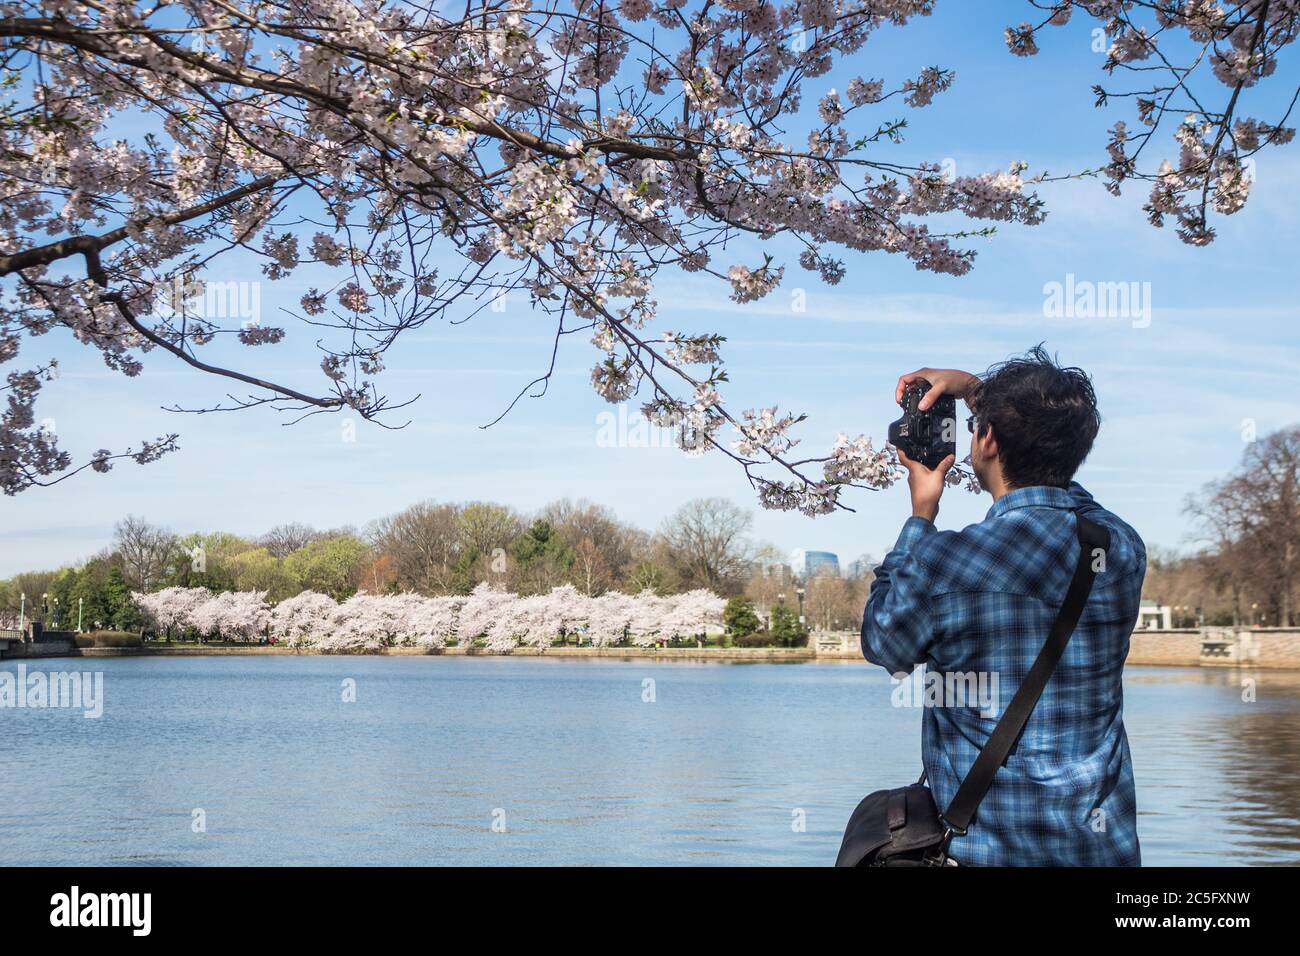 Un giovane fotografo maschile che fotografa / fotografa i fiori di ciliegi / sakura lungo il fiume Potomac, Washington, D.C., Stati Uniti Foto Stock